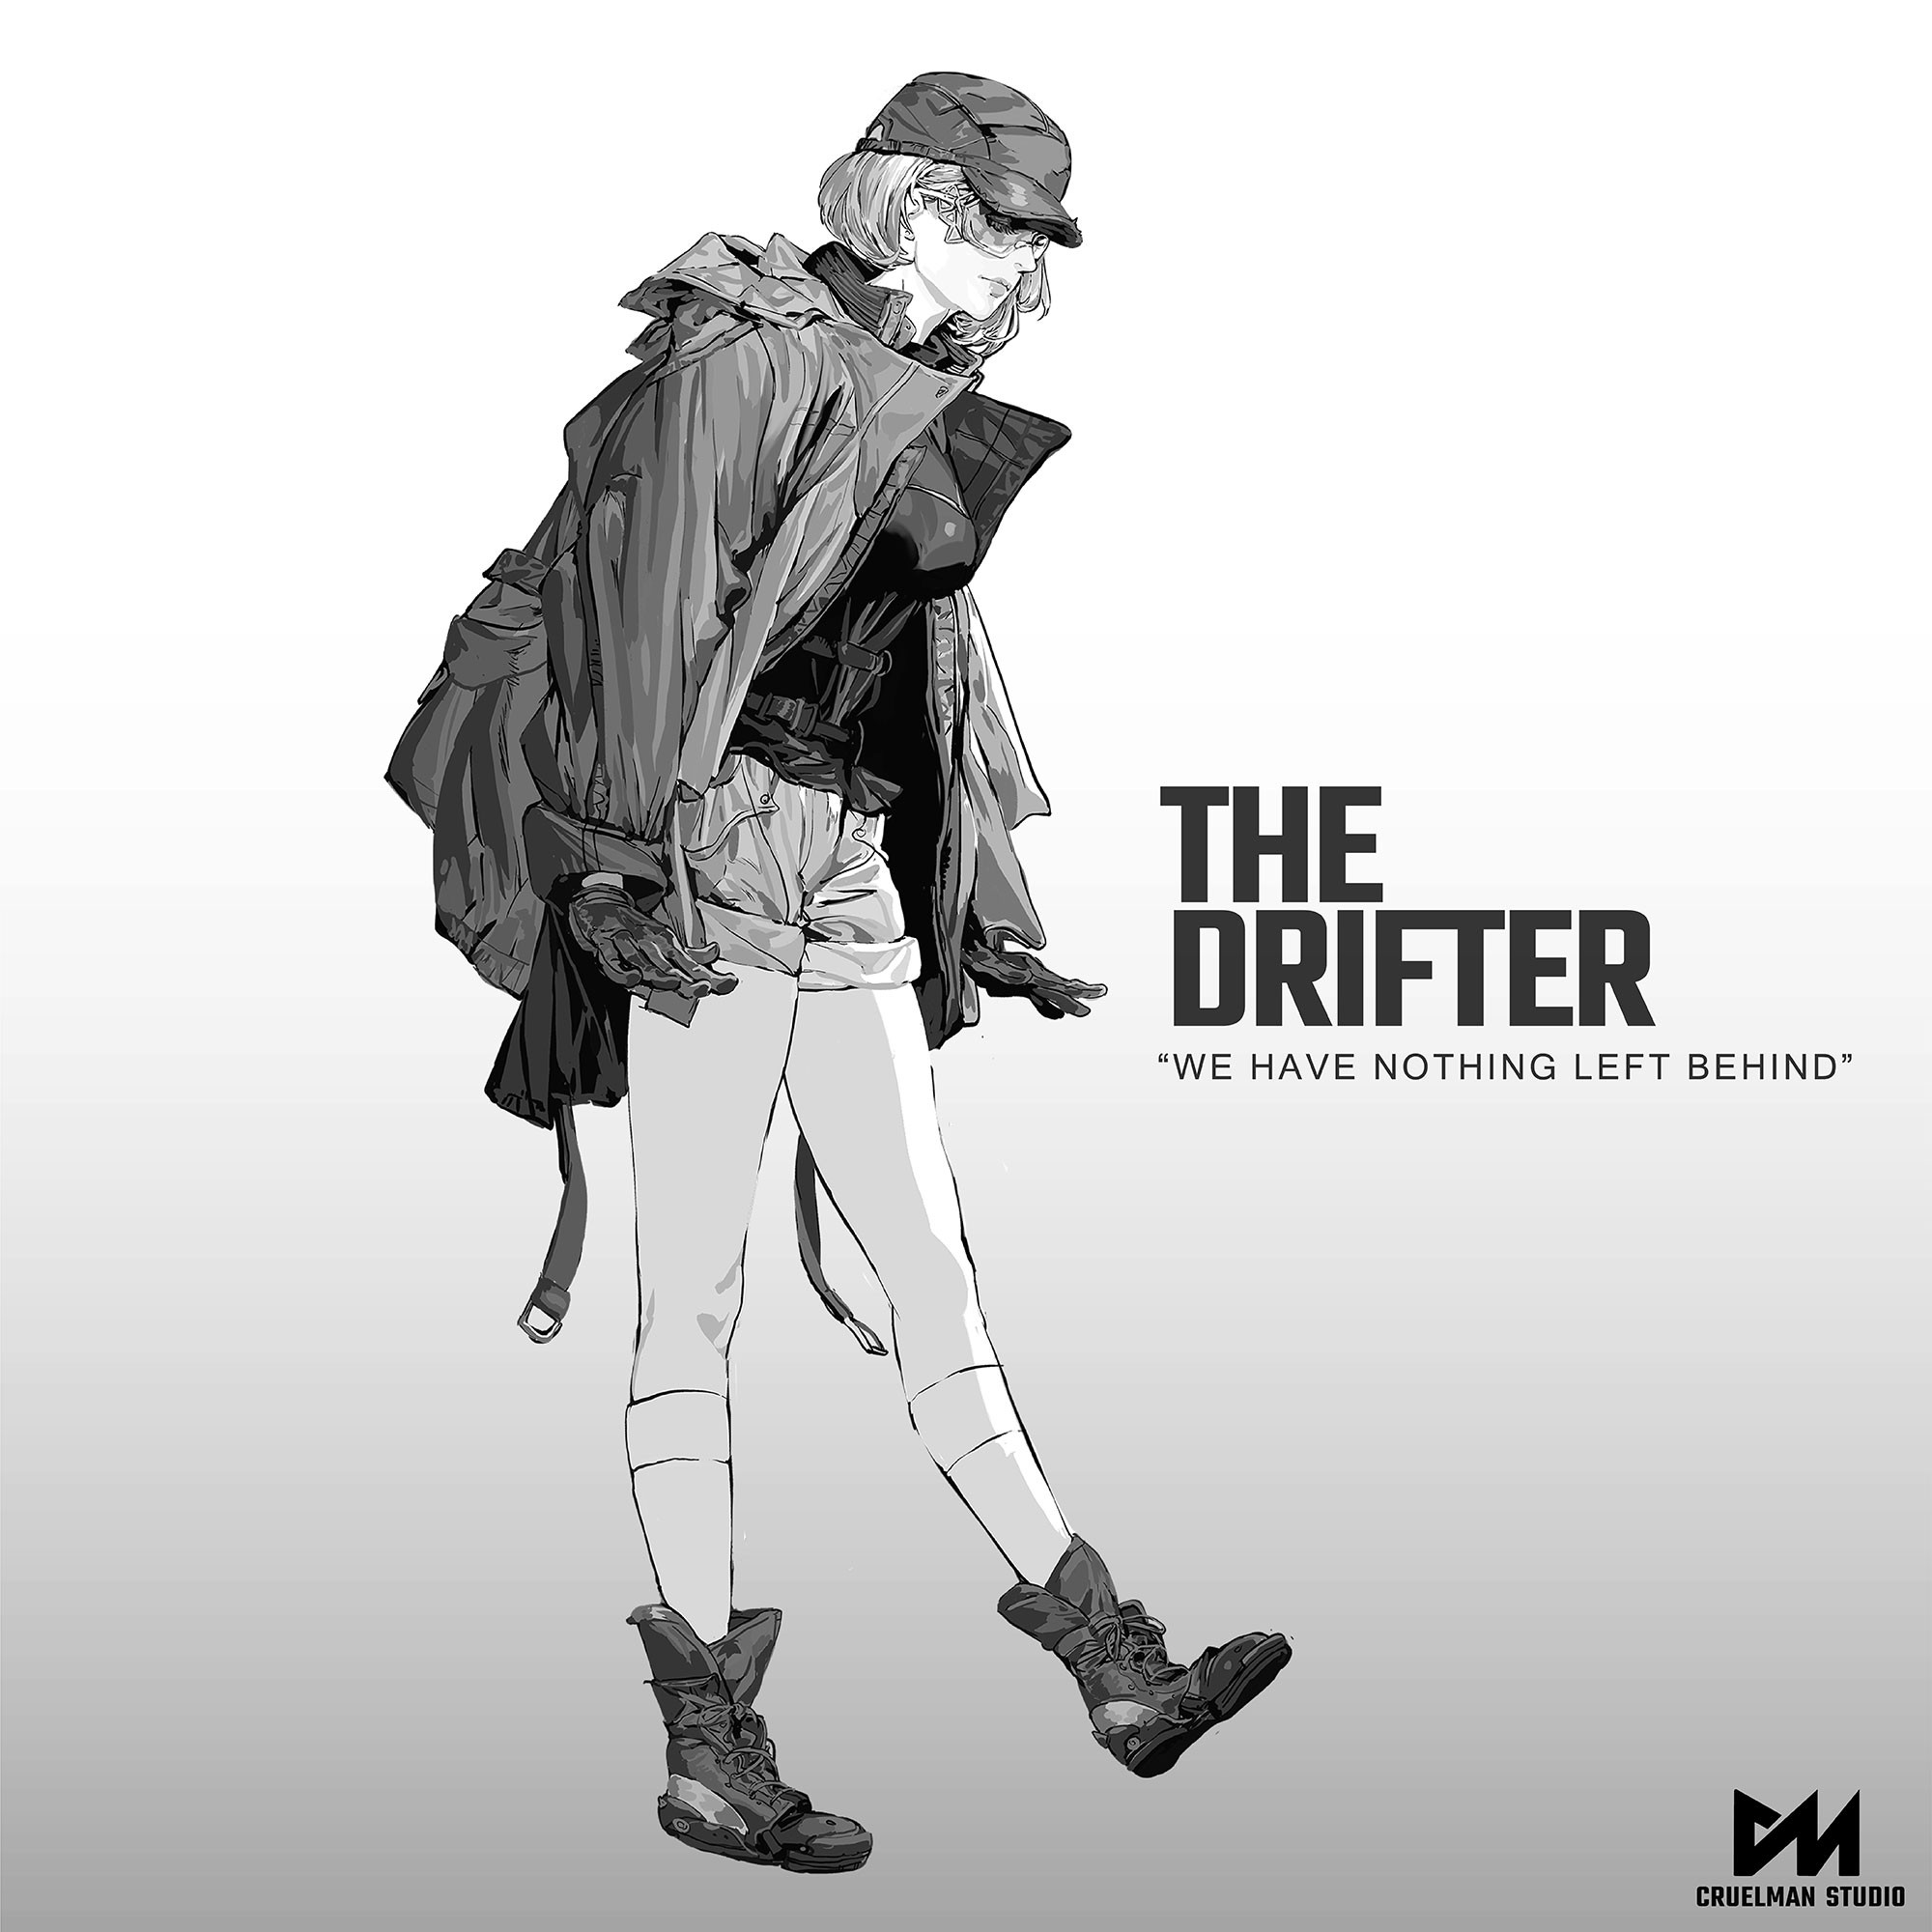 The Drifter
Erin